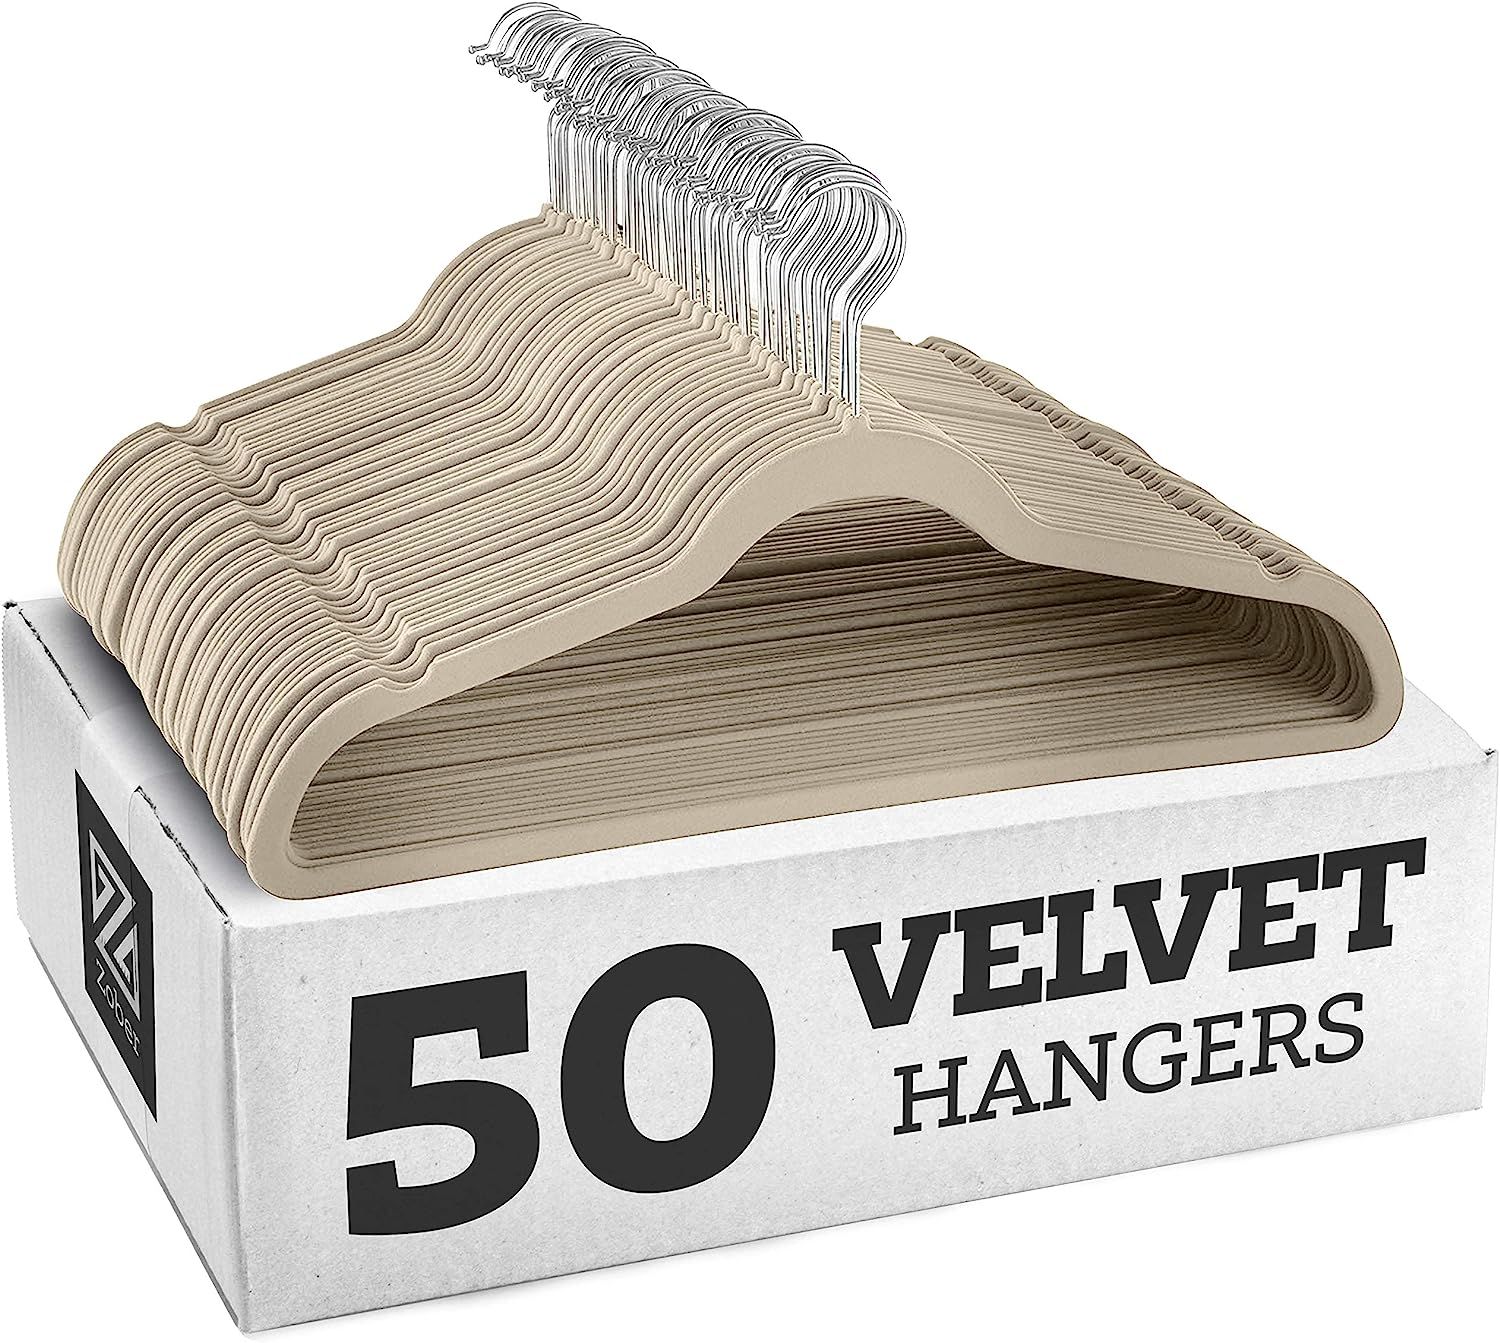 Zober Non-Slip Velvet Hangers - Suit Hangers (50-pack) Ultra Thin Space Saving 360 Degree Swivel ... | Amazon (US)